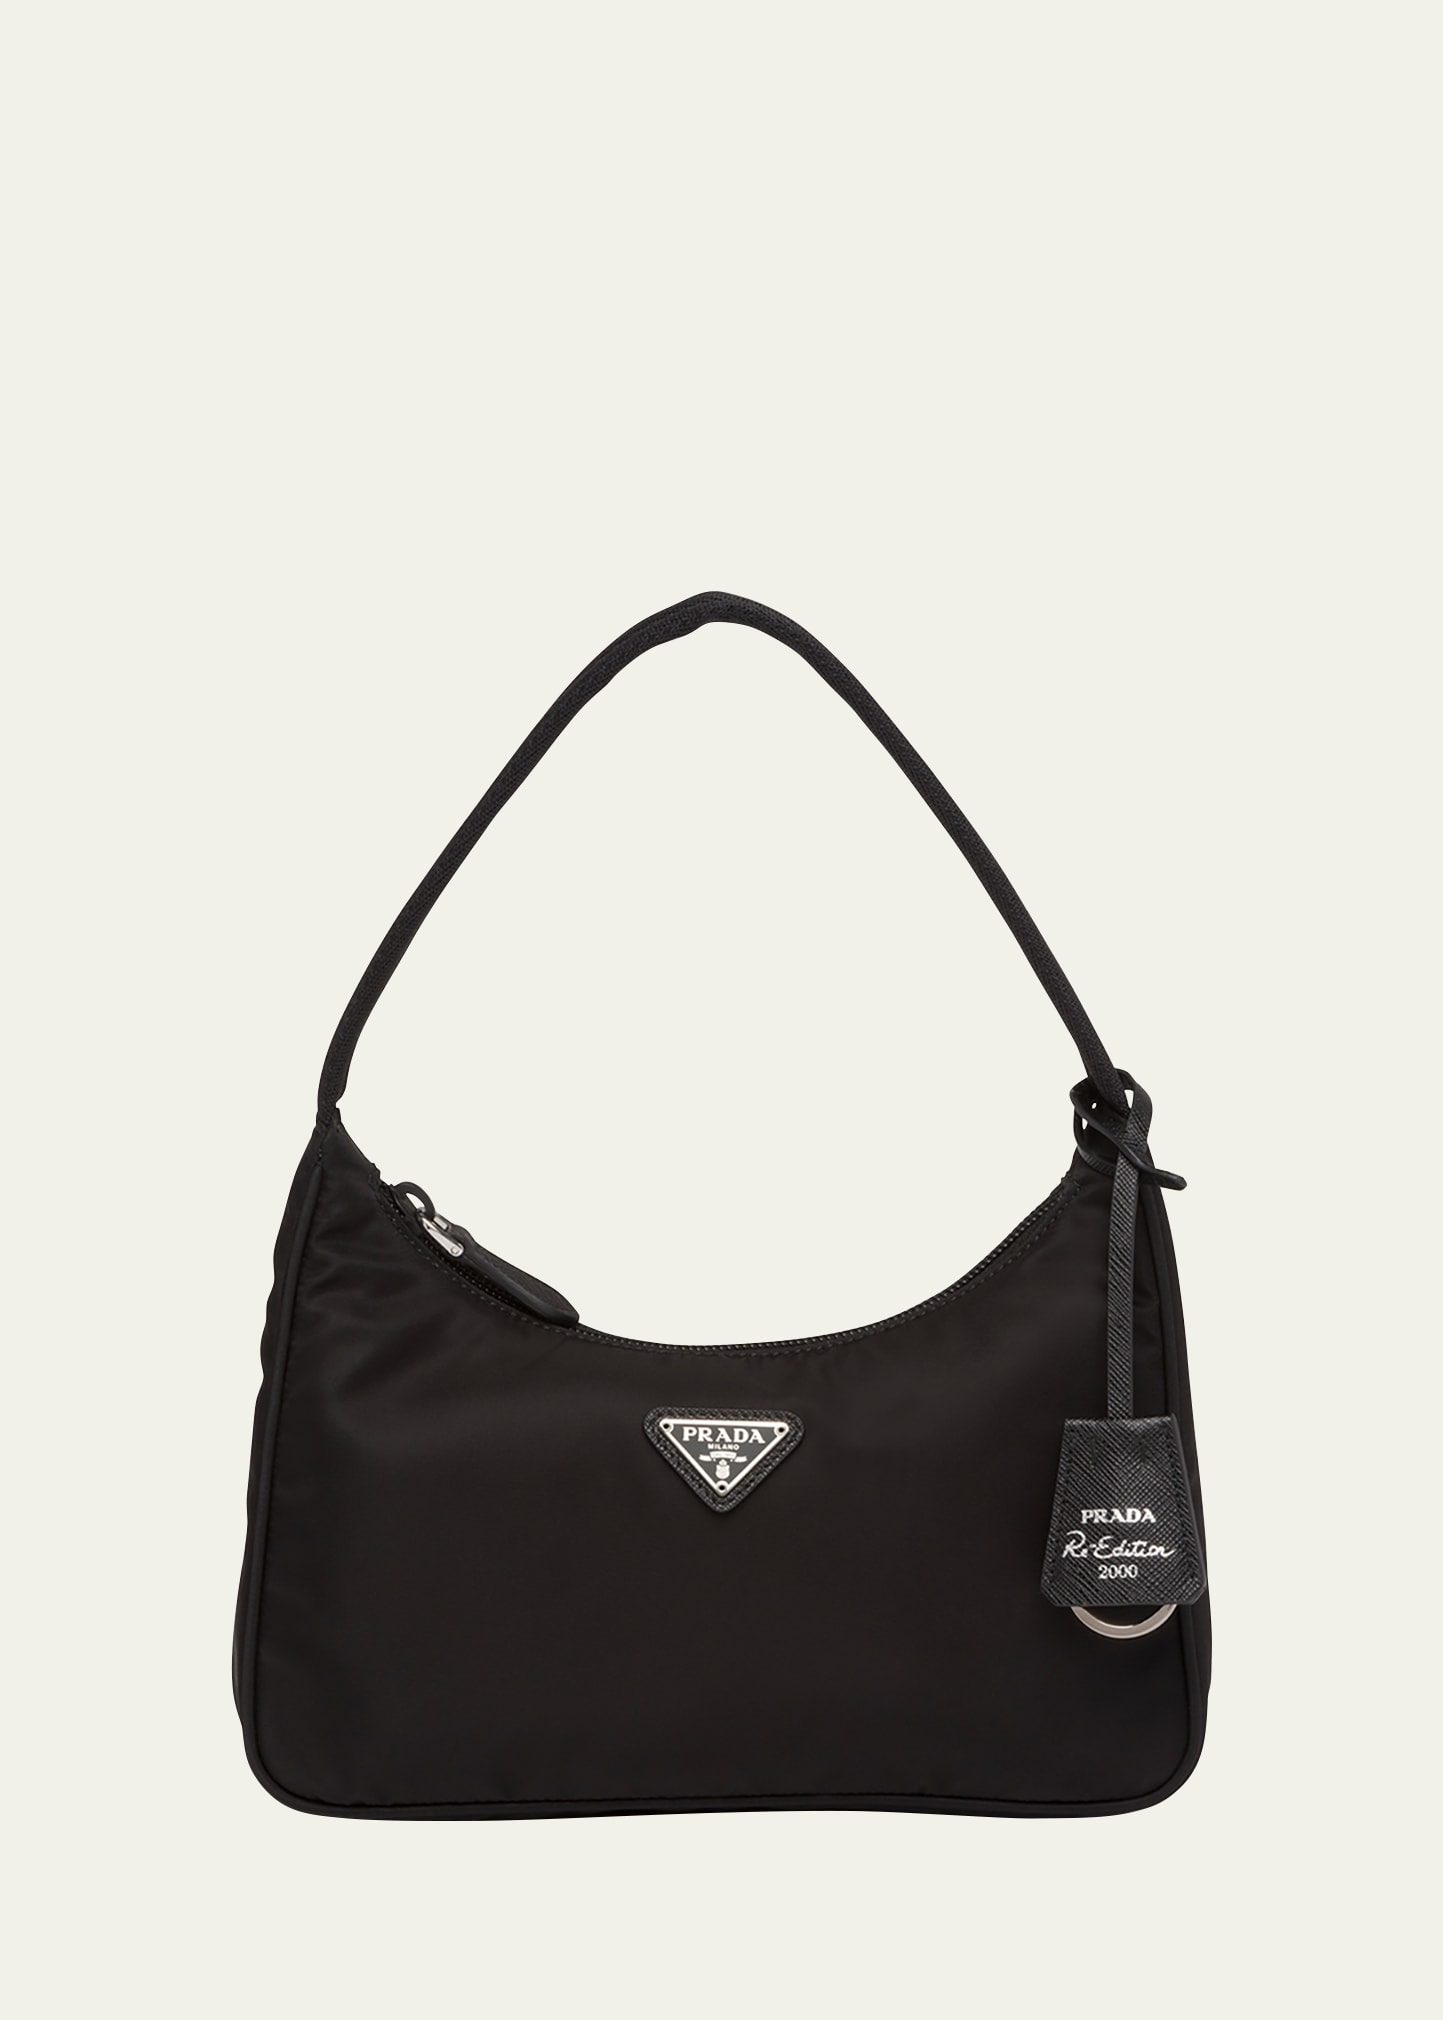 Prada Re-edition 2000 Zip Shoulder Bag In F0e18 Alabastro